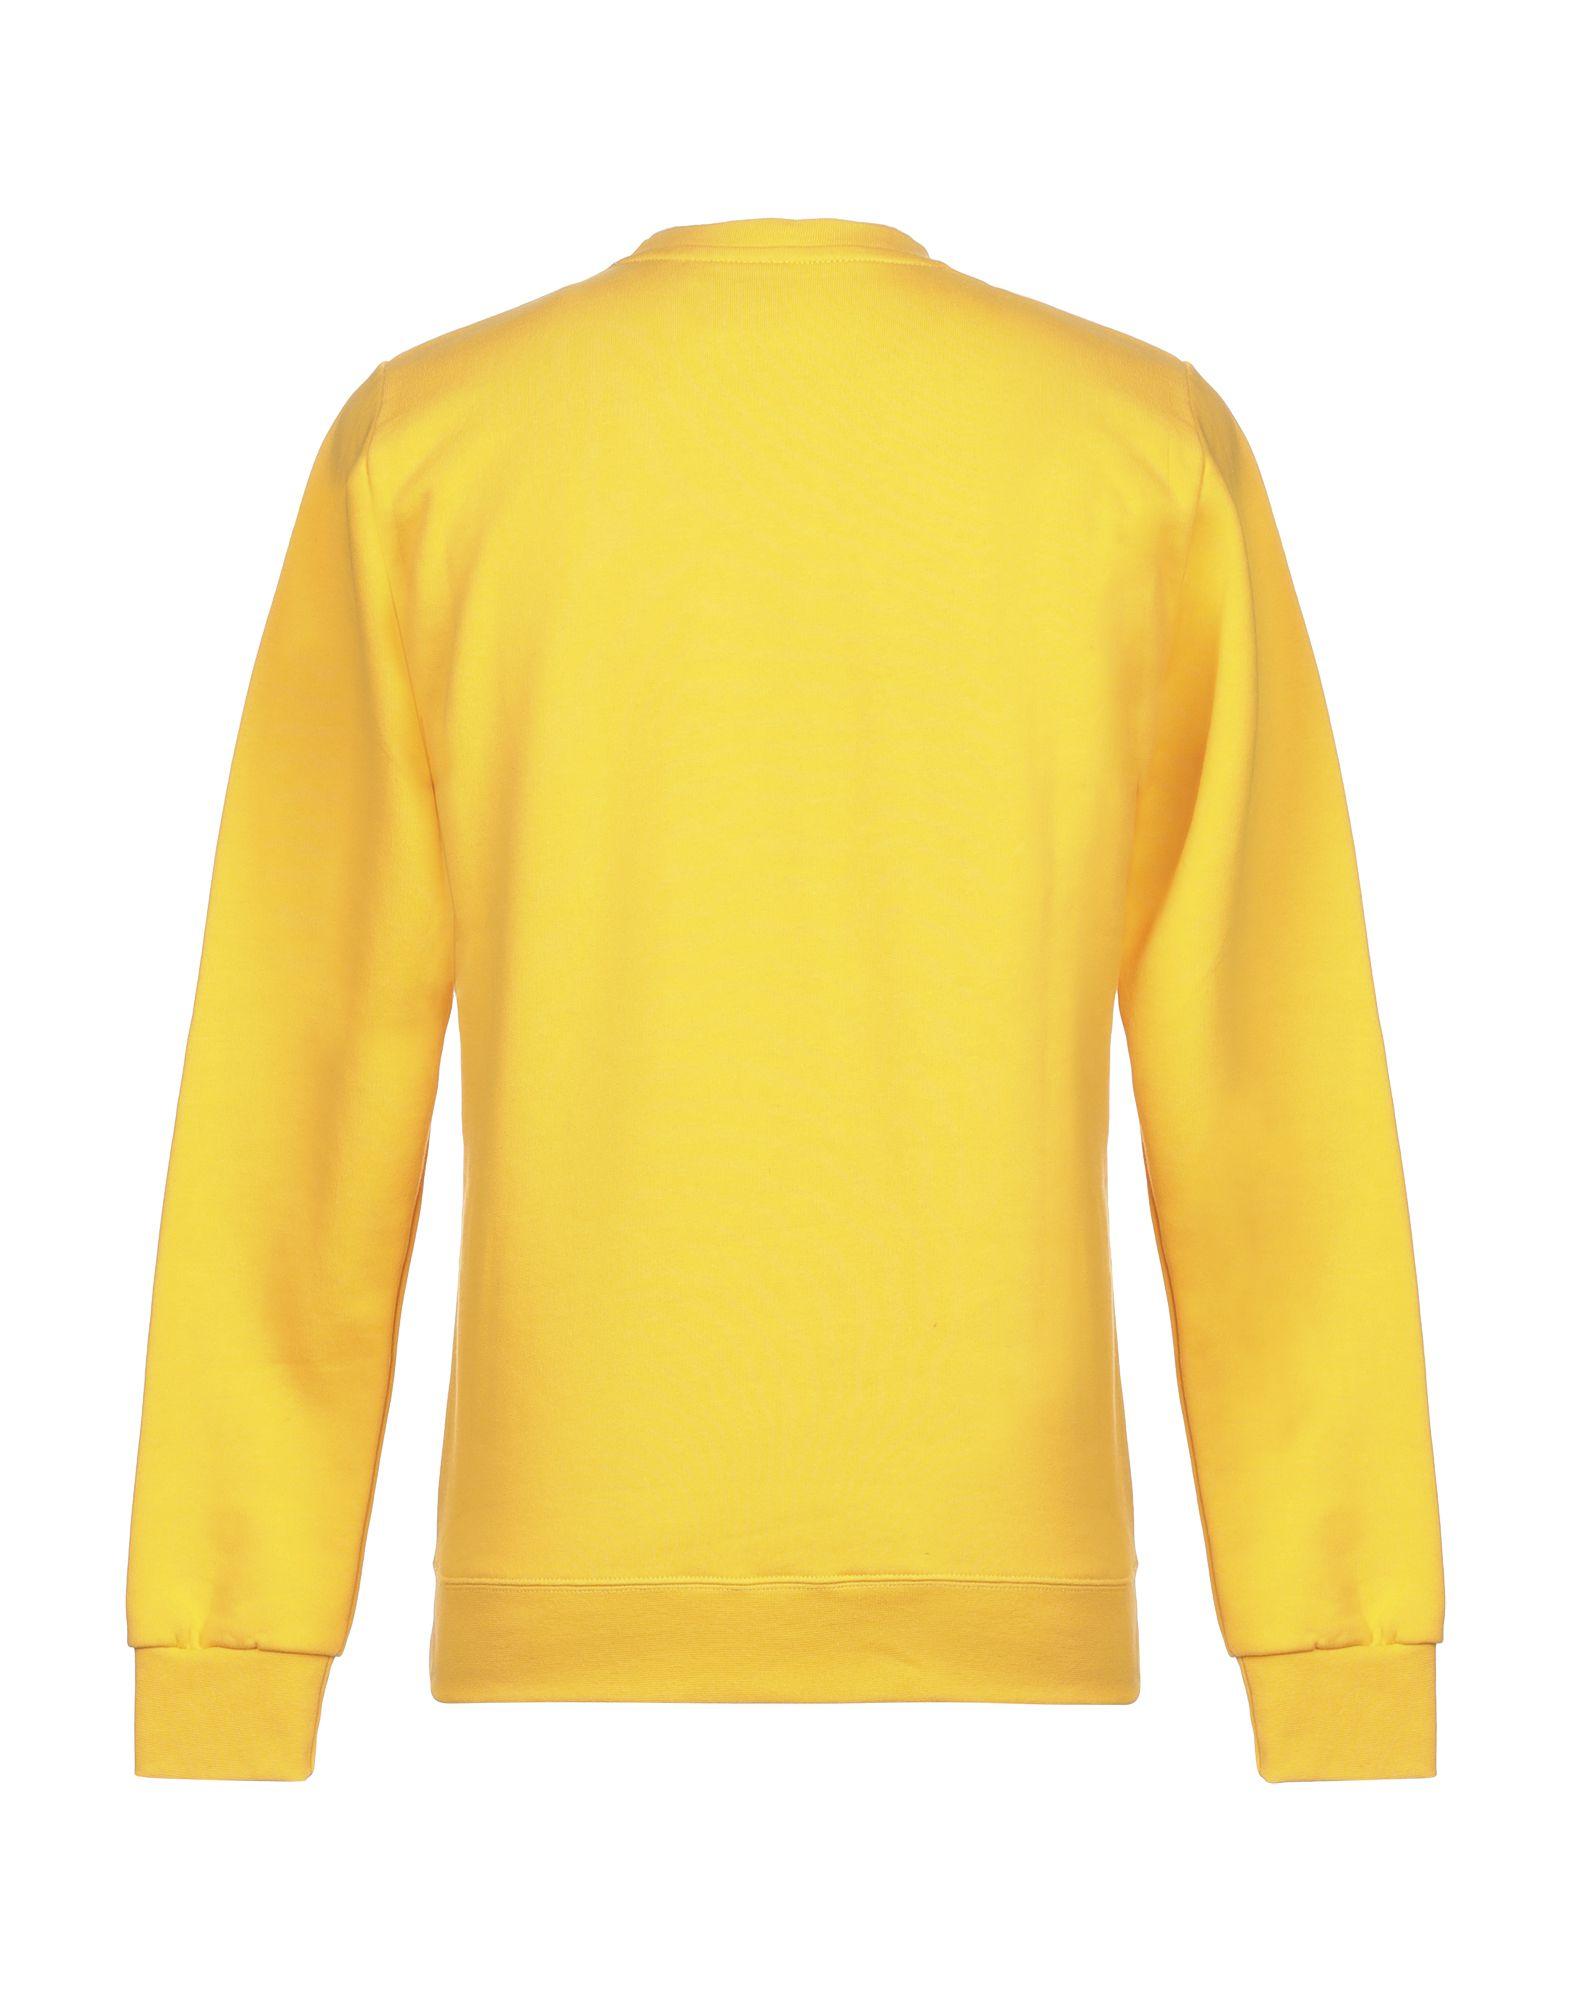 Starter Sweatshirt in Yellow for Men - Lyst